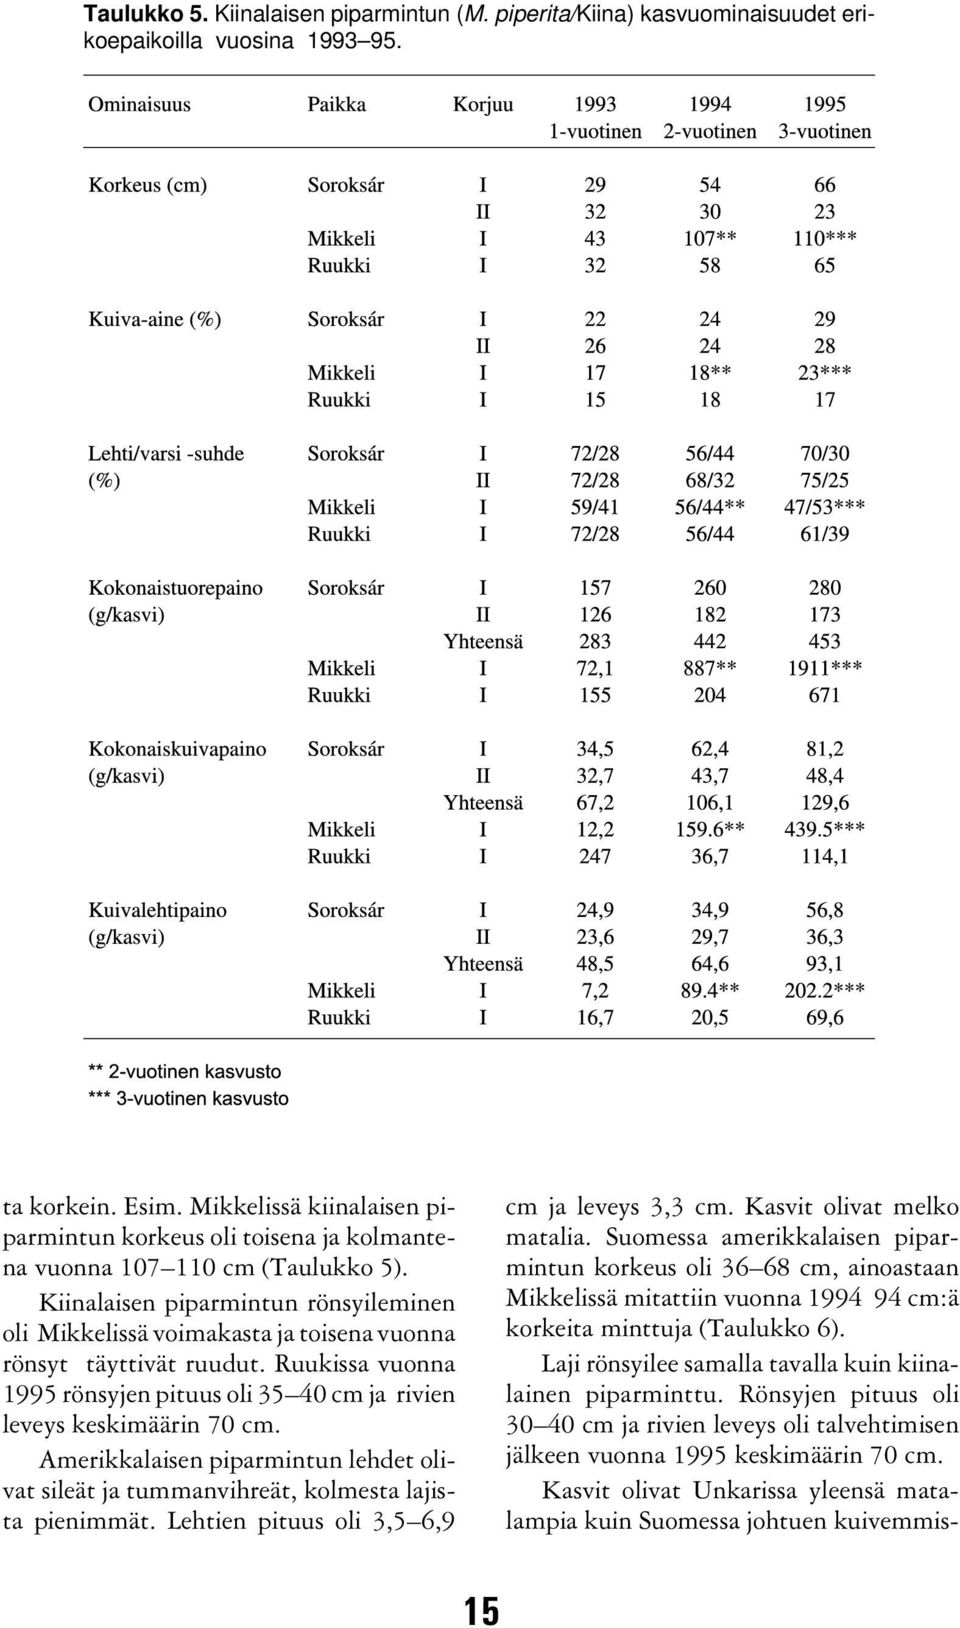 Kiinalaisen piparmintun rönsyileminen oli Mikkelissä voimakasta ja toisena vuonna rönsyt täyttivät ruudut. Ruukissa vuonna 1995 rönsyjen pituus oli 35 40 cm ja rivien leveys keskimäärin 70 cm.